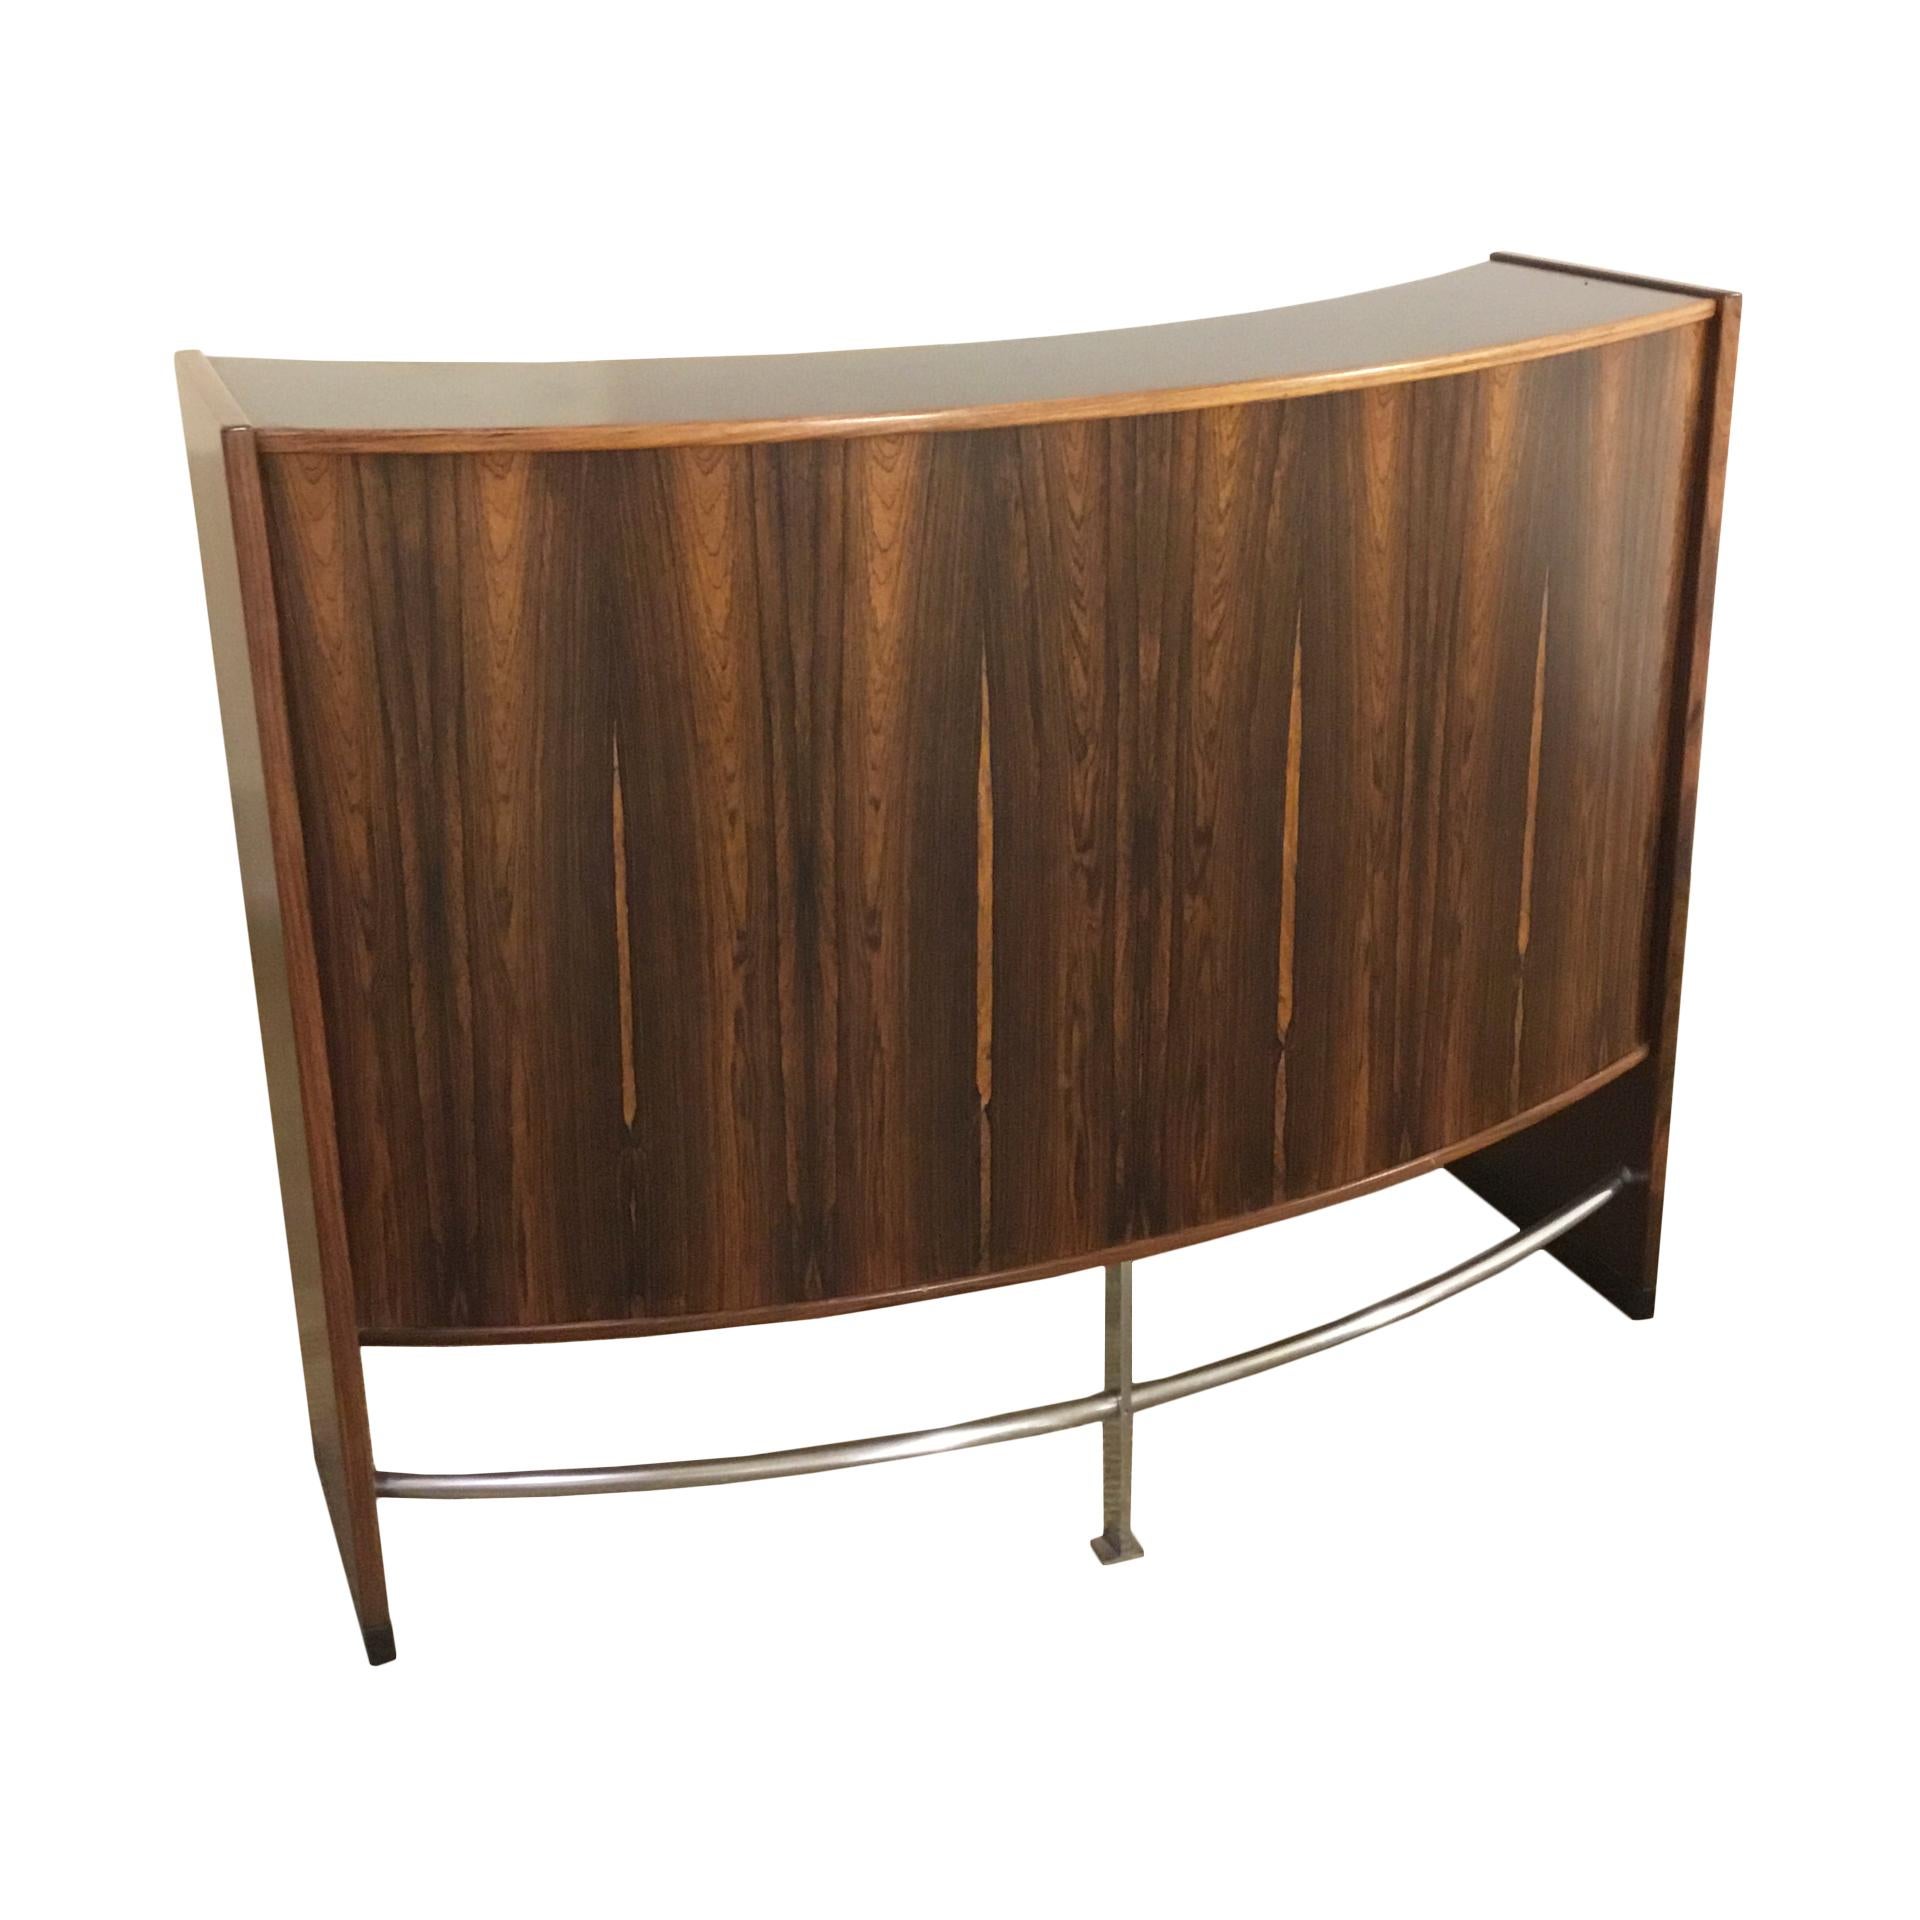 Danish Bar Furniture Mod. Dyrlundbar Designed By Erik Buch